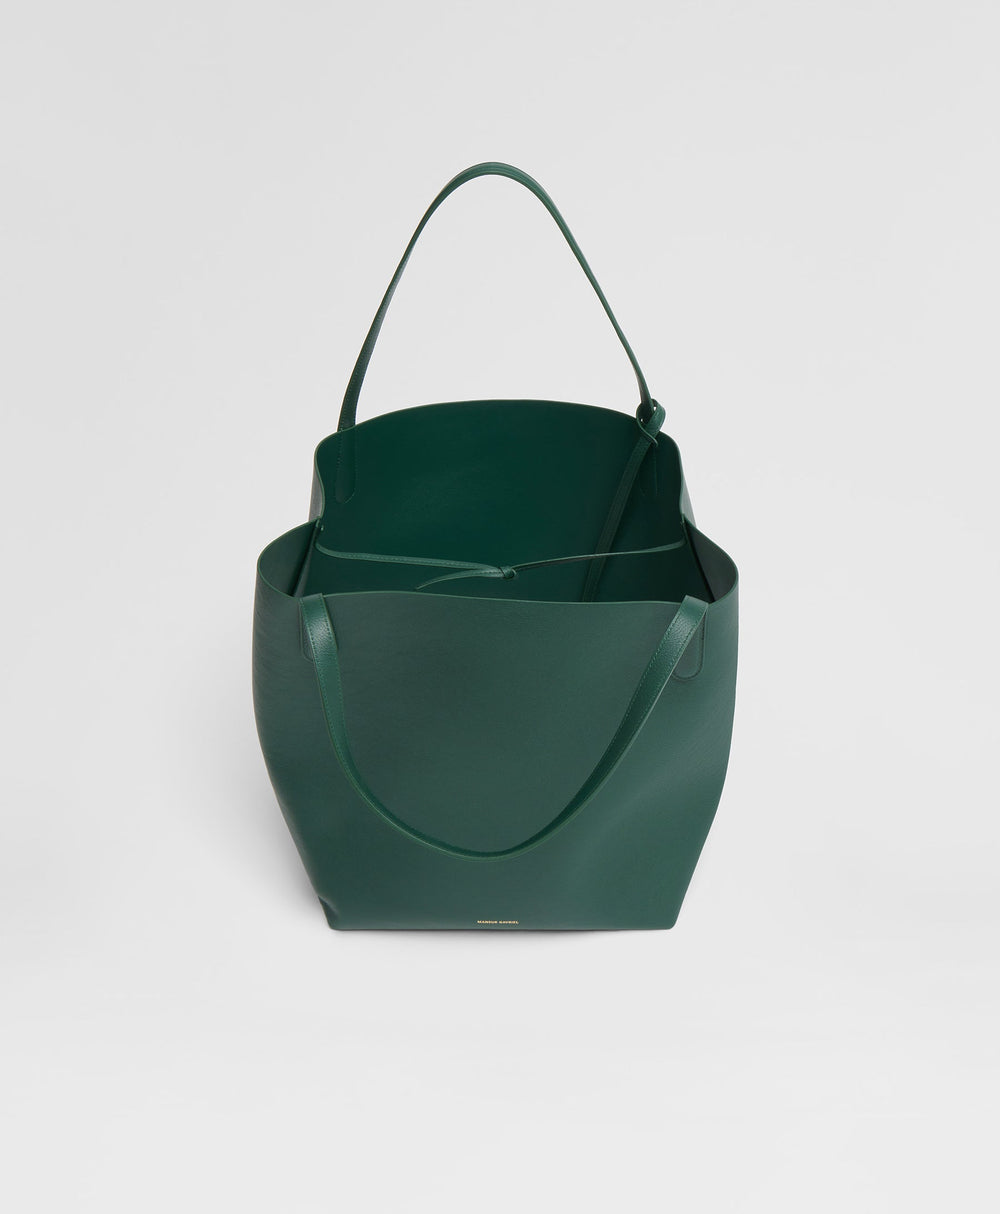 Leather Handle Bag Protector Purse Handbag